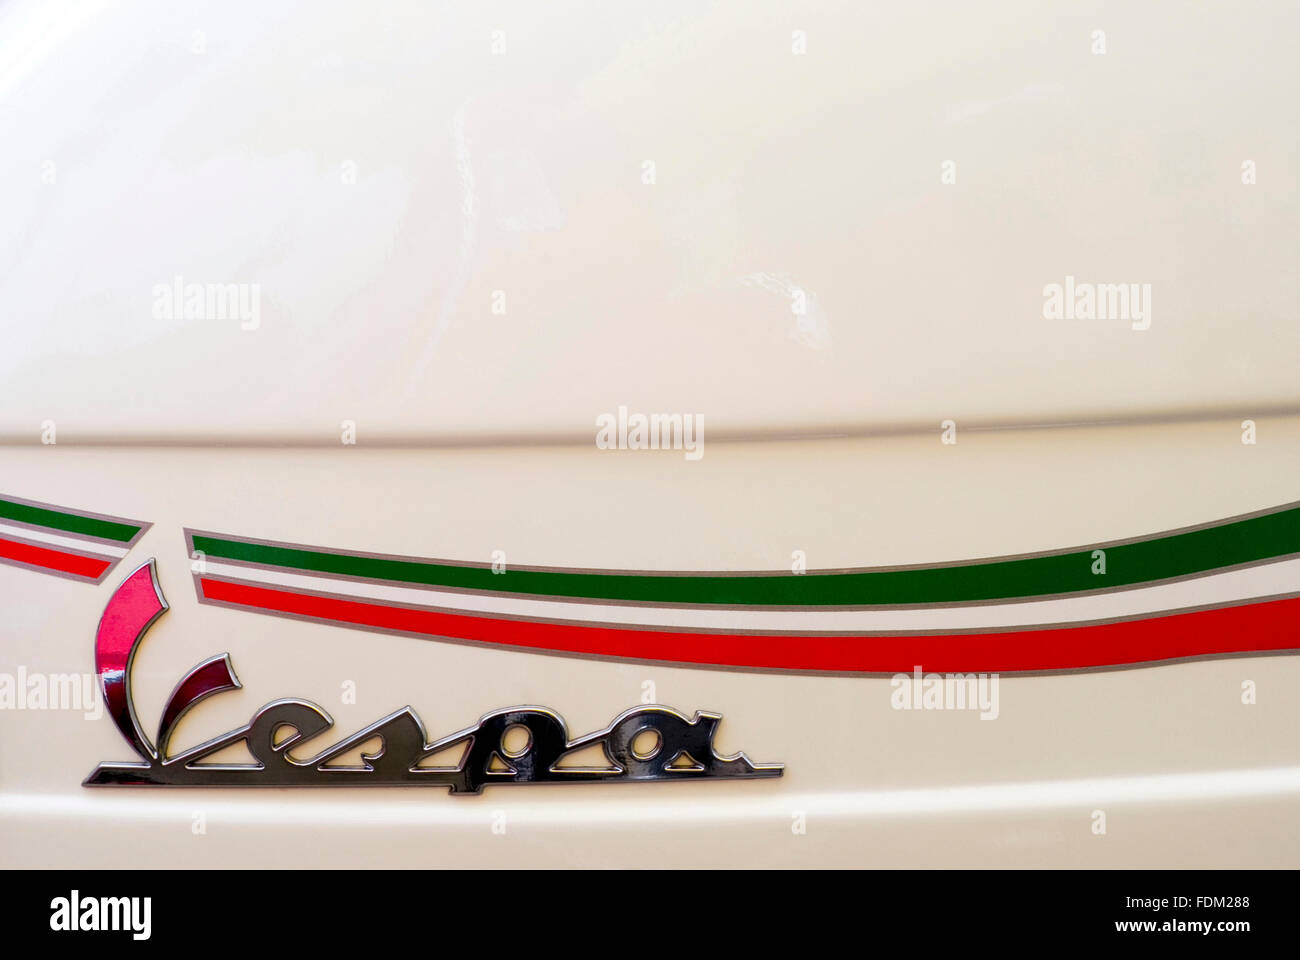 Vespa Italian scooter logo Stock Photo